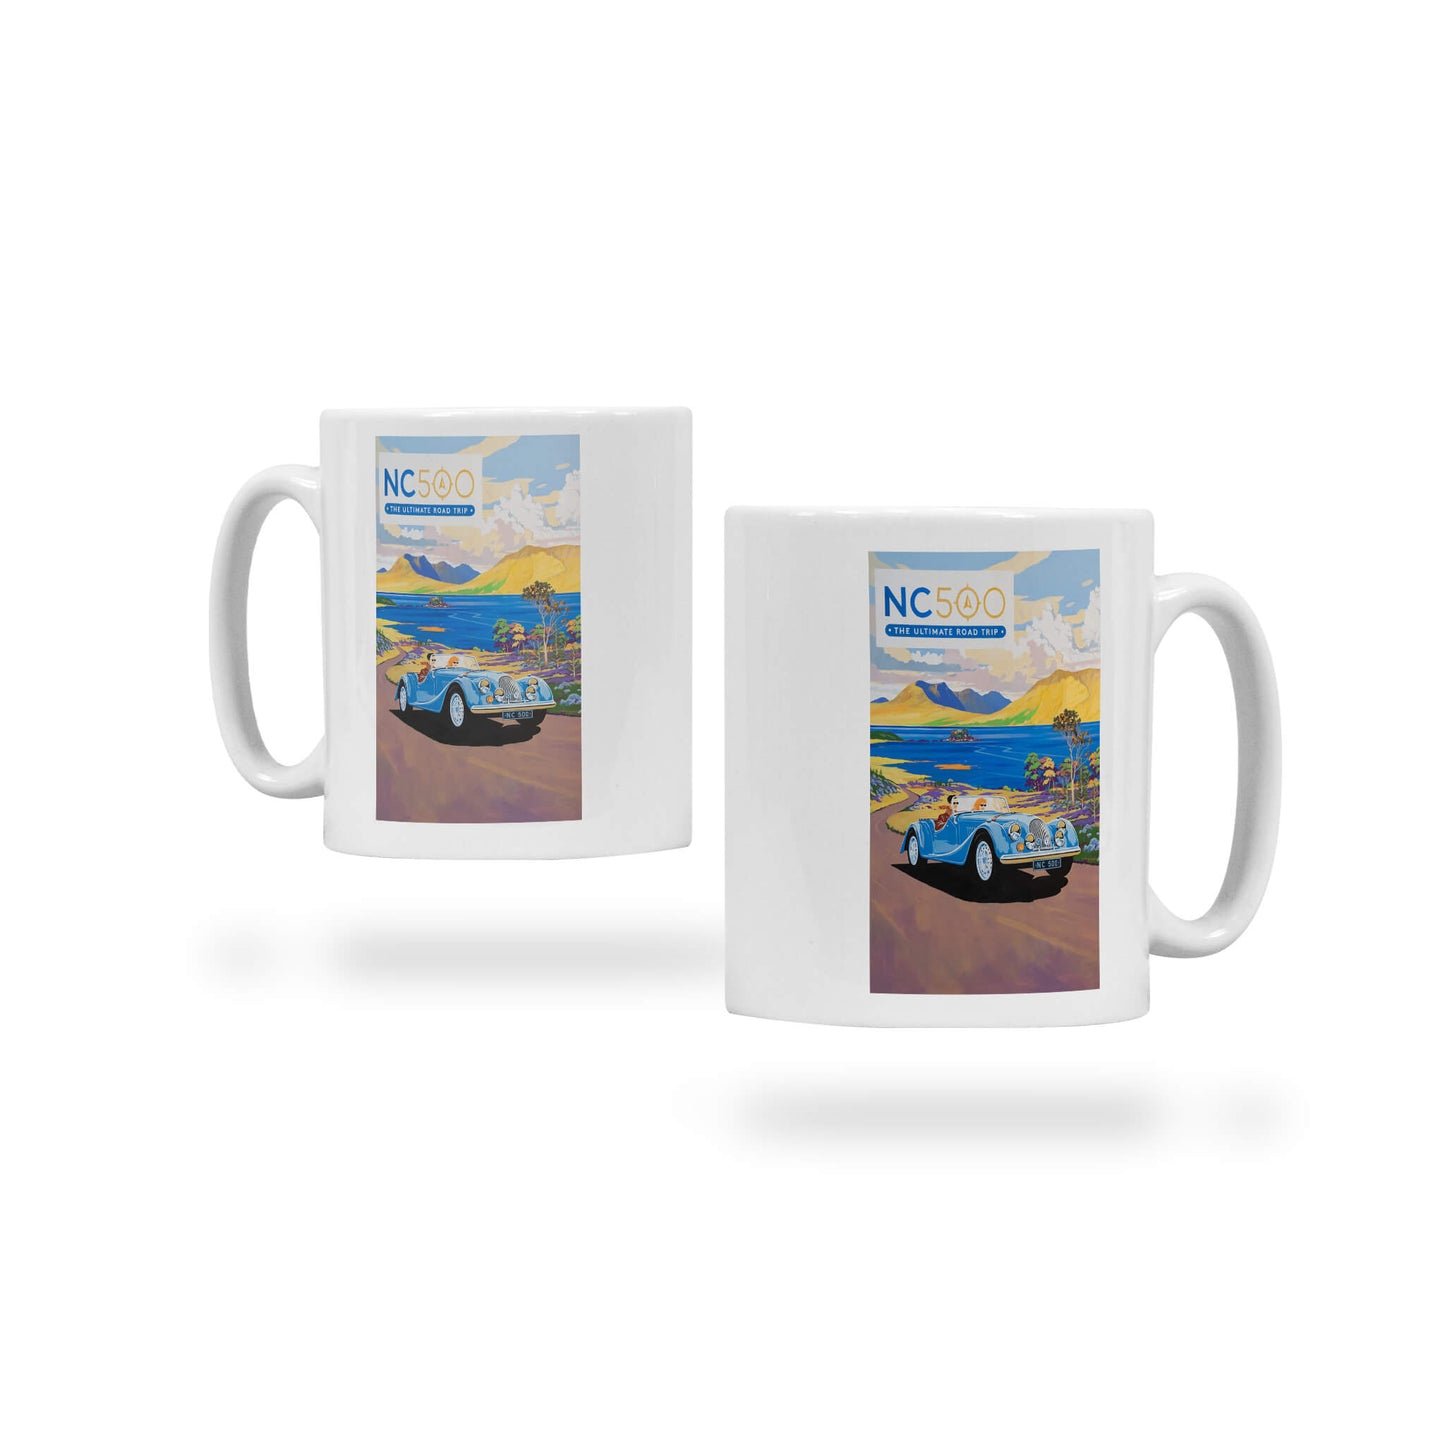 Loch Torridon Ceramic Mug